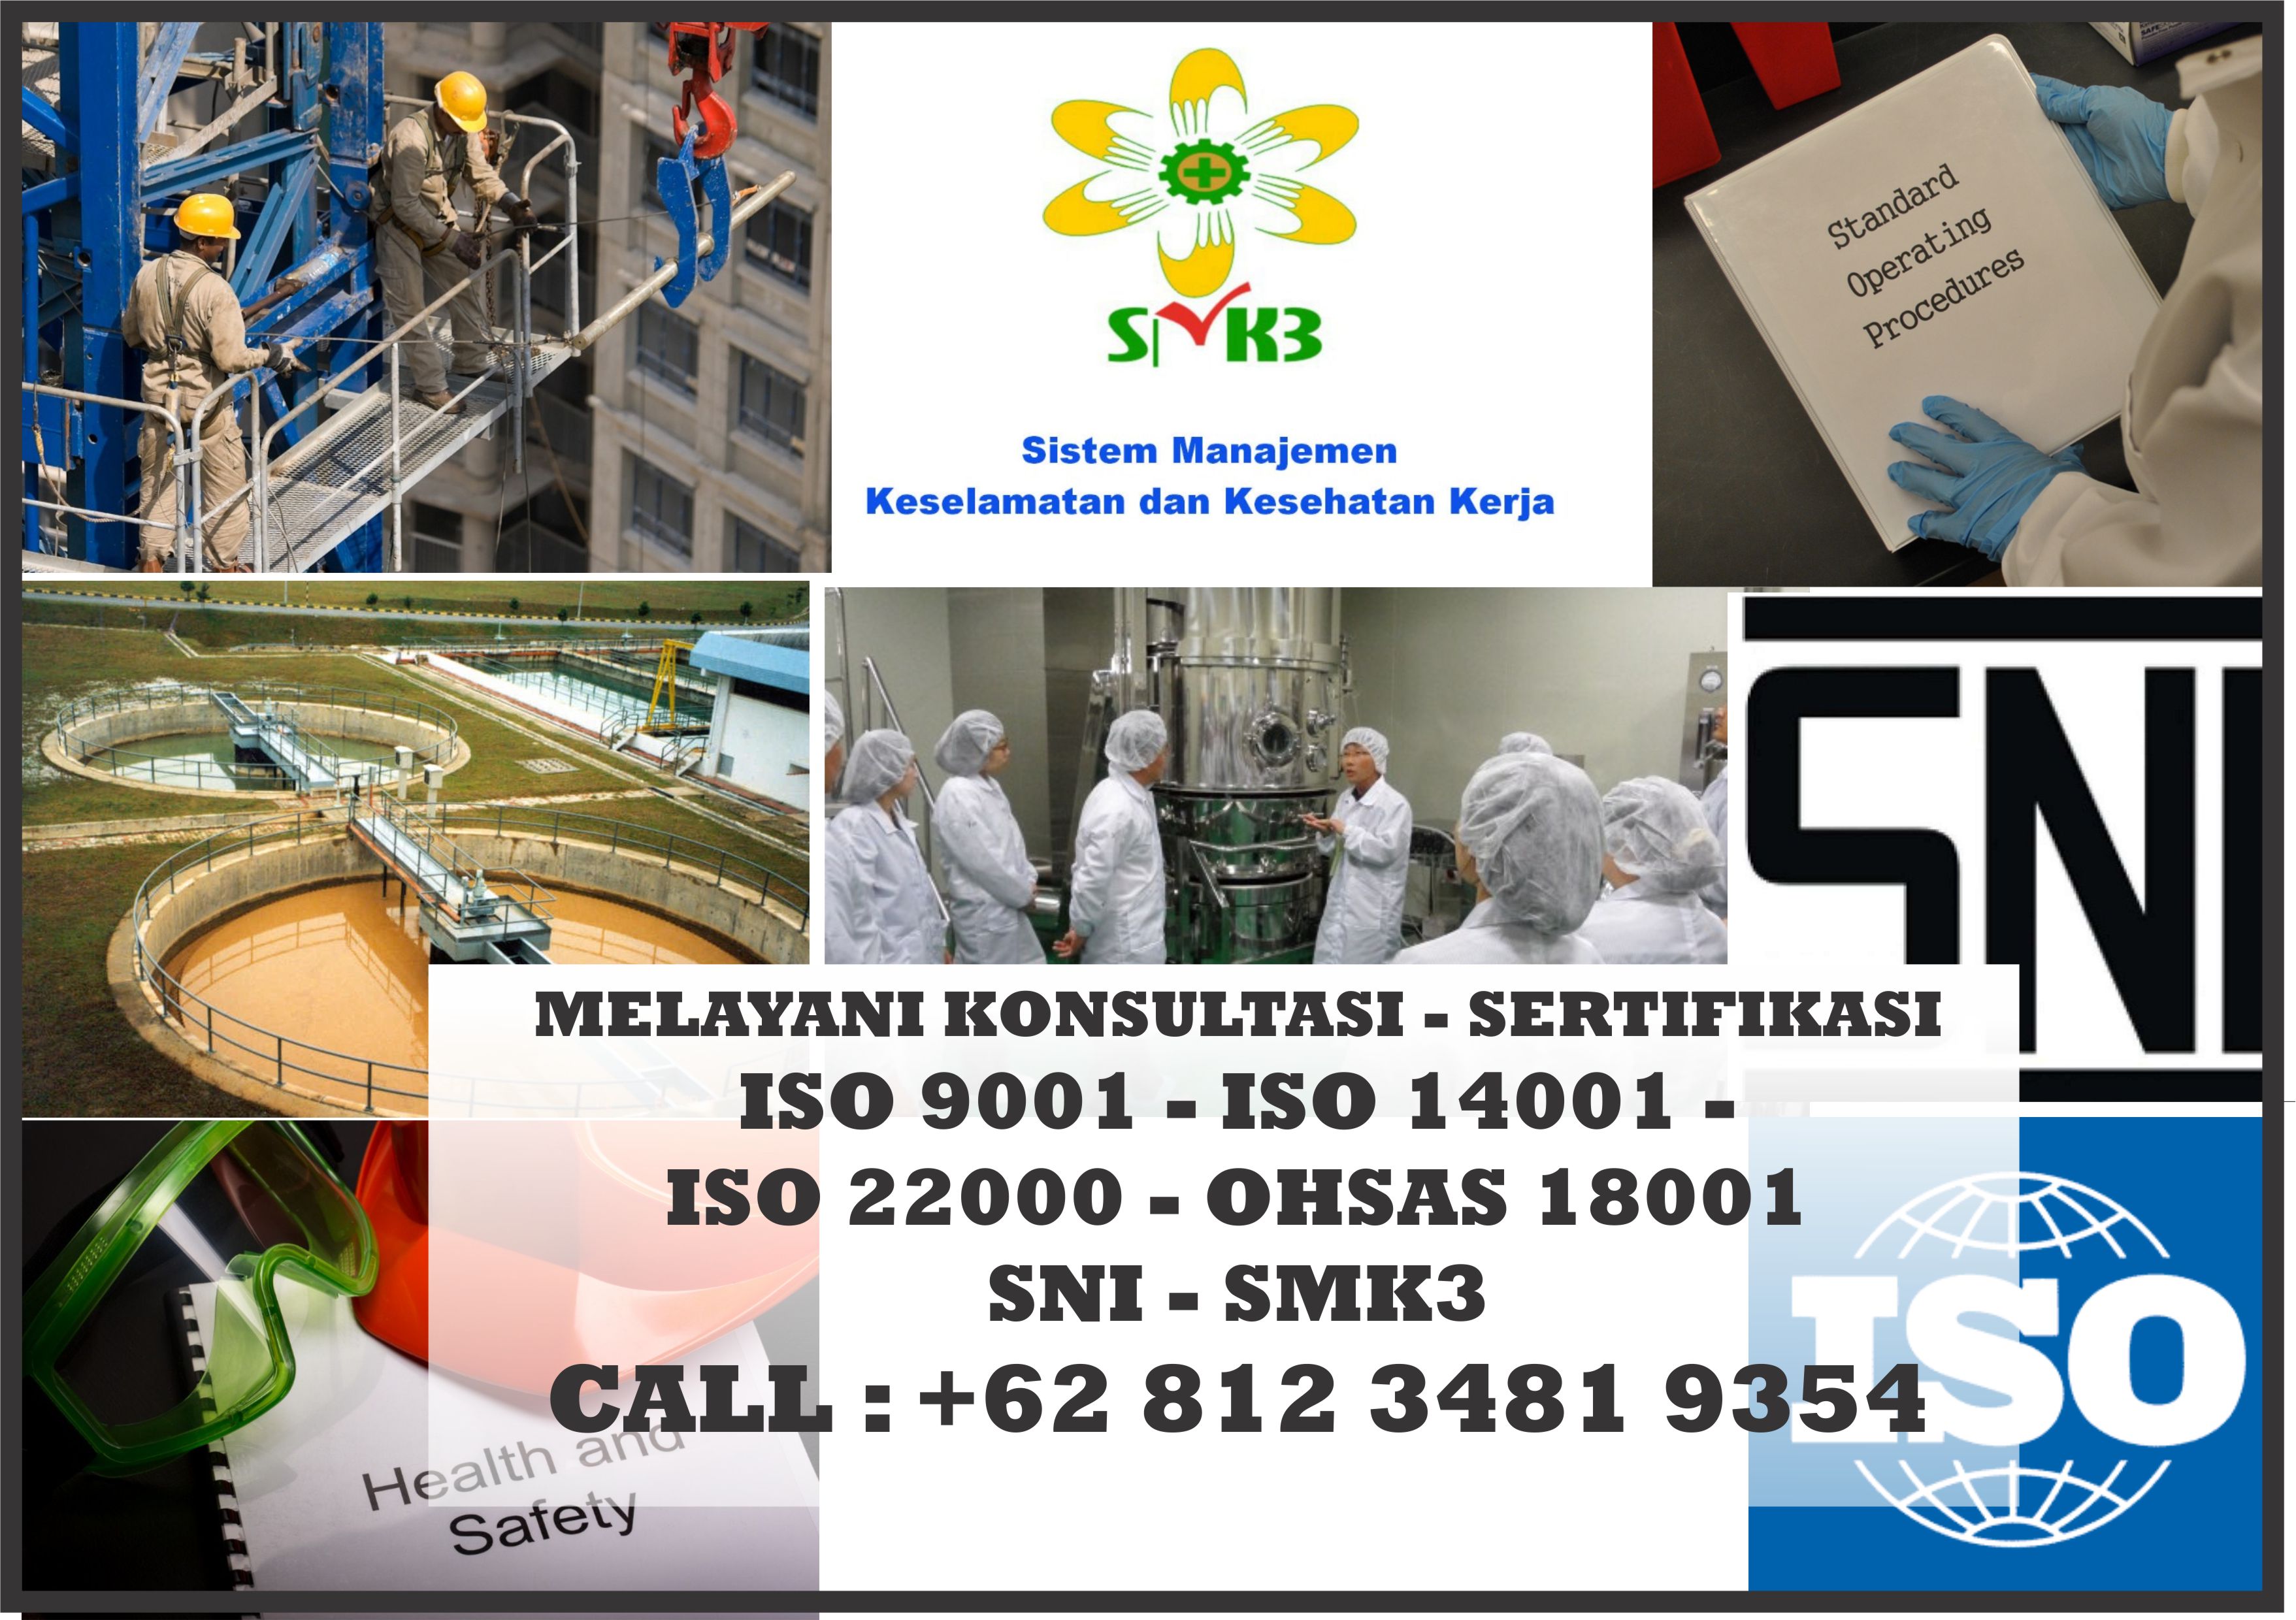 Jasa Konsultan Sertifikasi ISO di Surabaya, Jasa Konsultan Sertifikasi ISO di Jakarta, Jasa Konsultan Sertifikasi ISO di Bandung, Jasa Konsultan ISO 9001